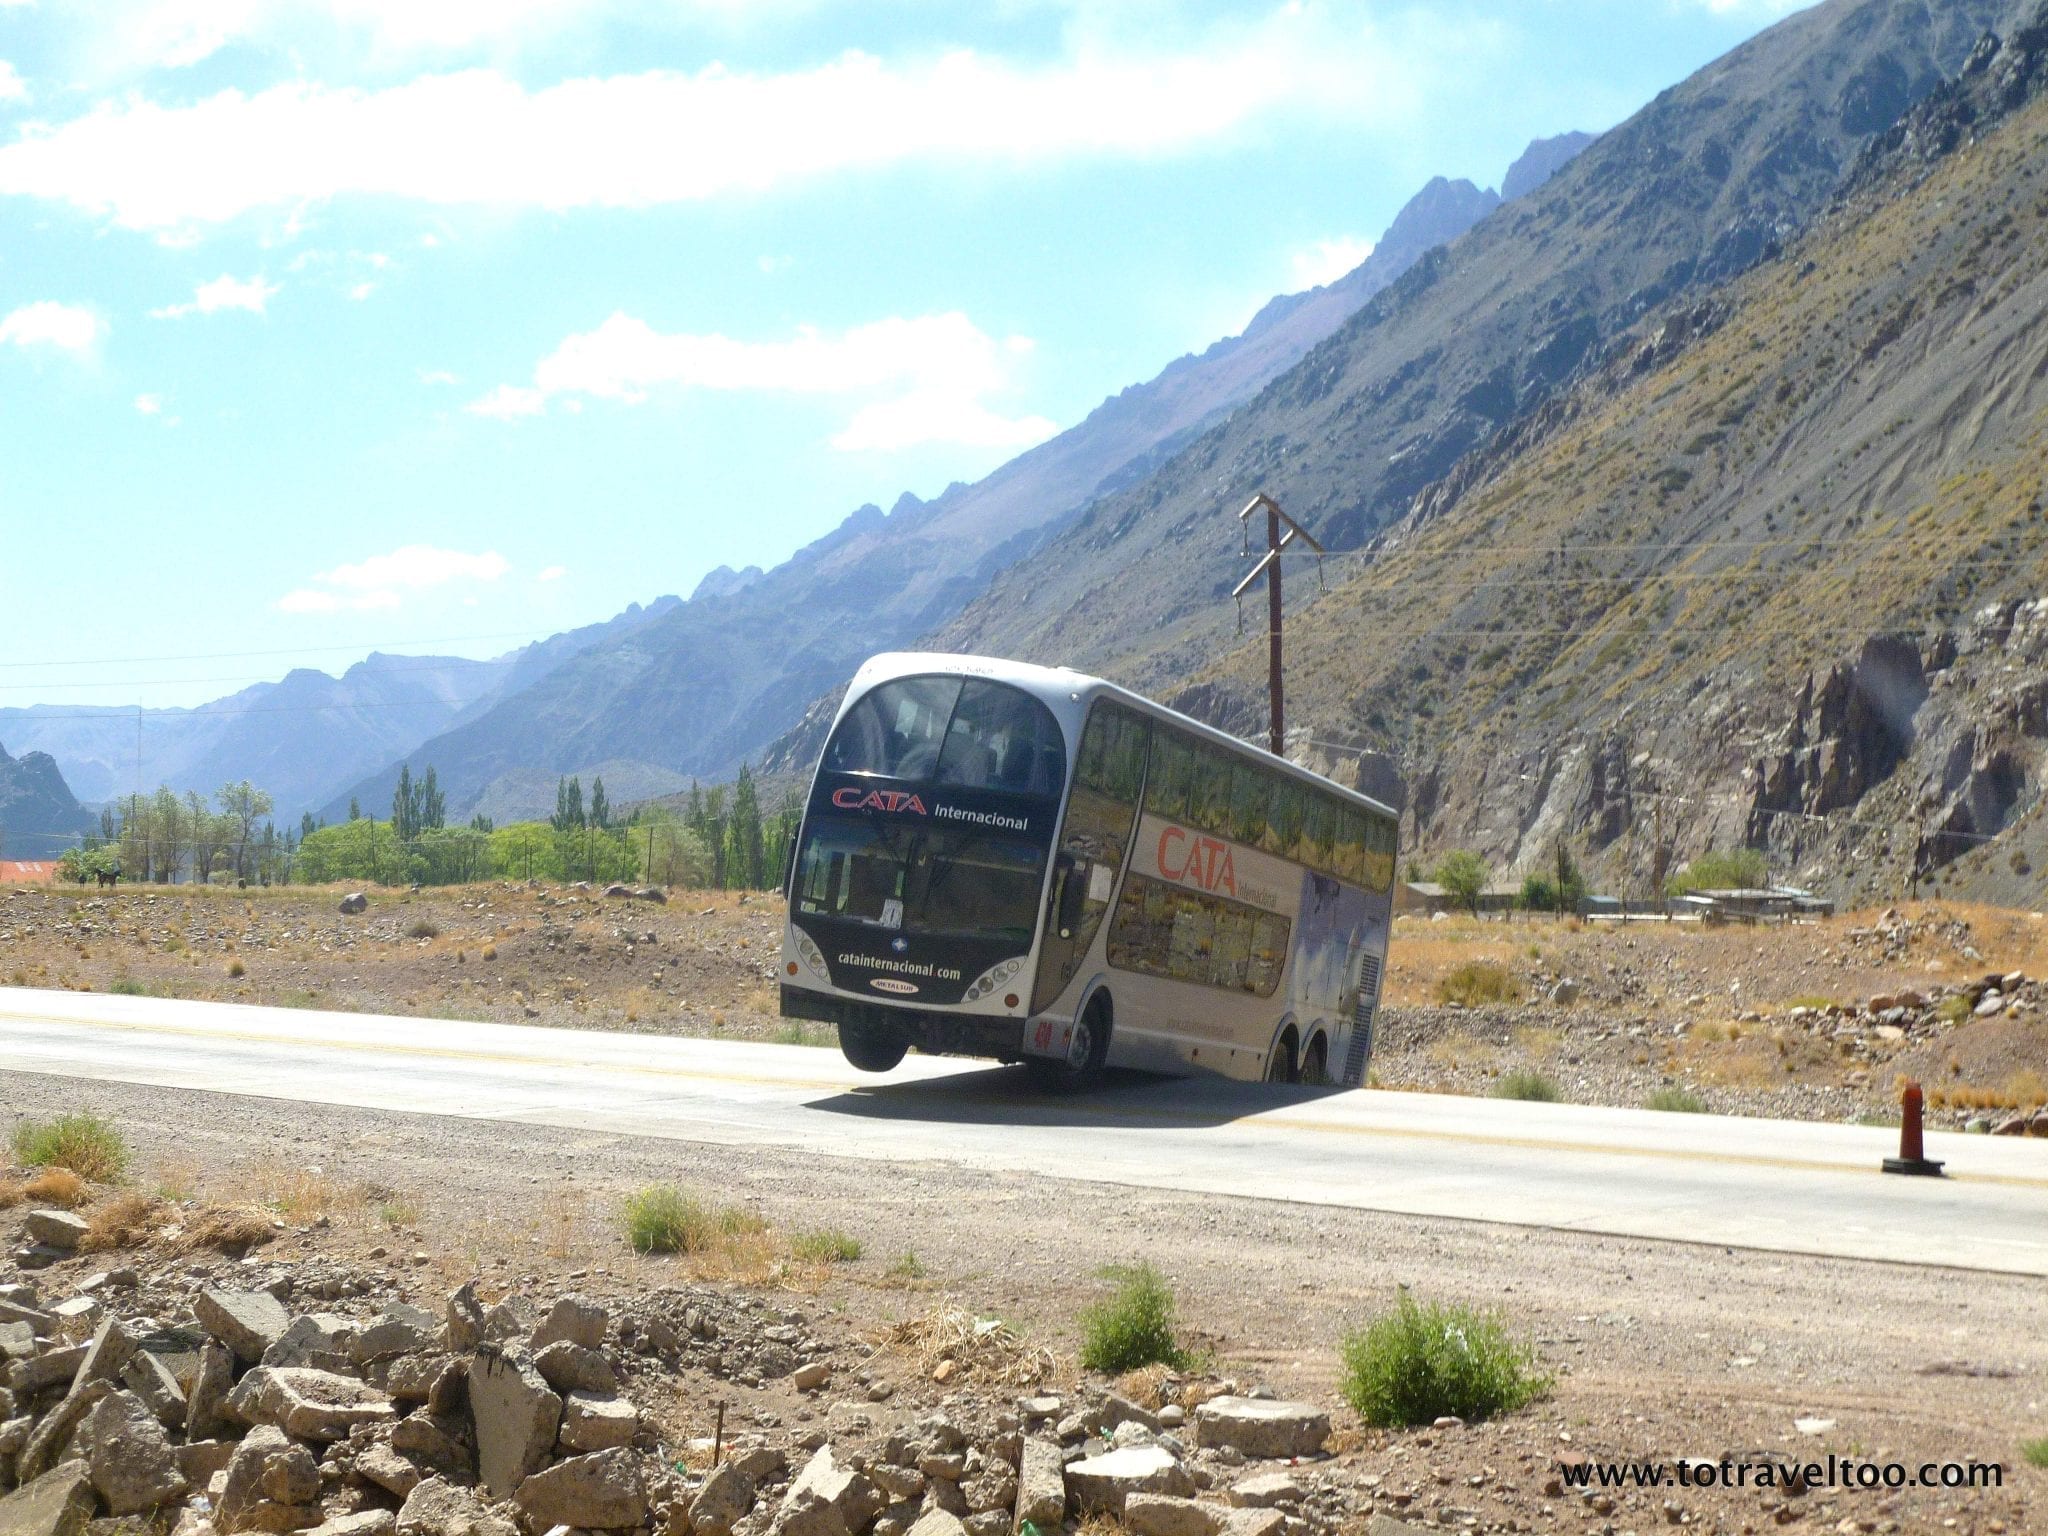 Its a dangerous road to Mendoza Argentina